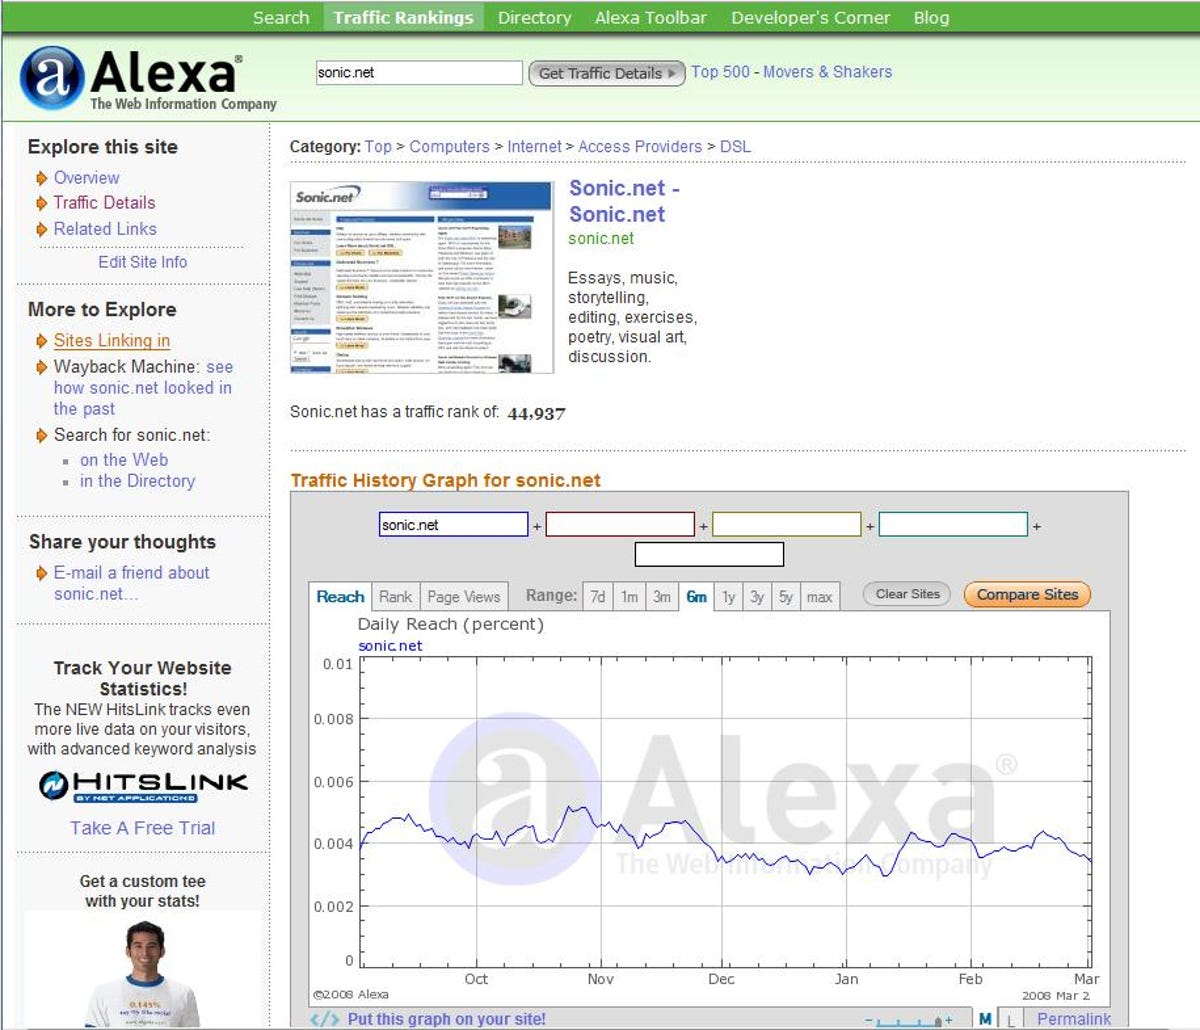 Alexa.com's site traffic graph